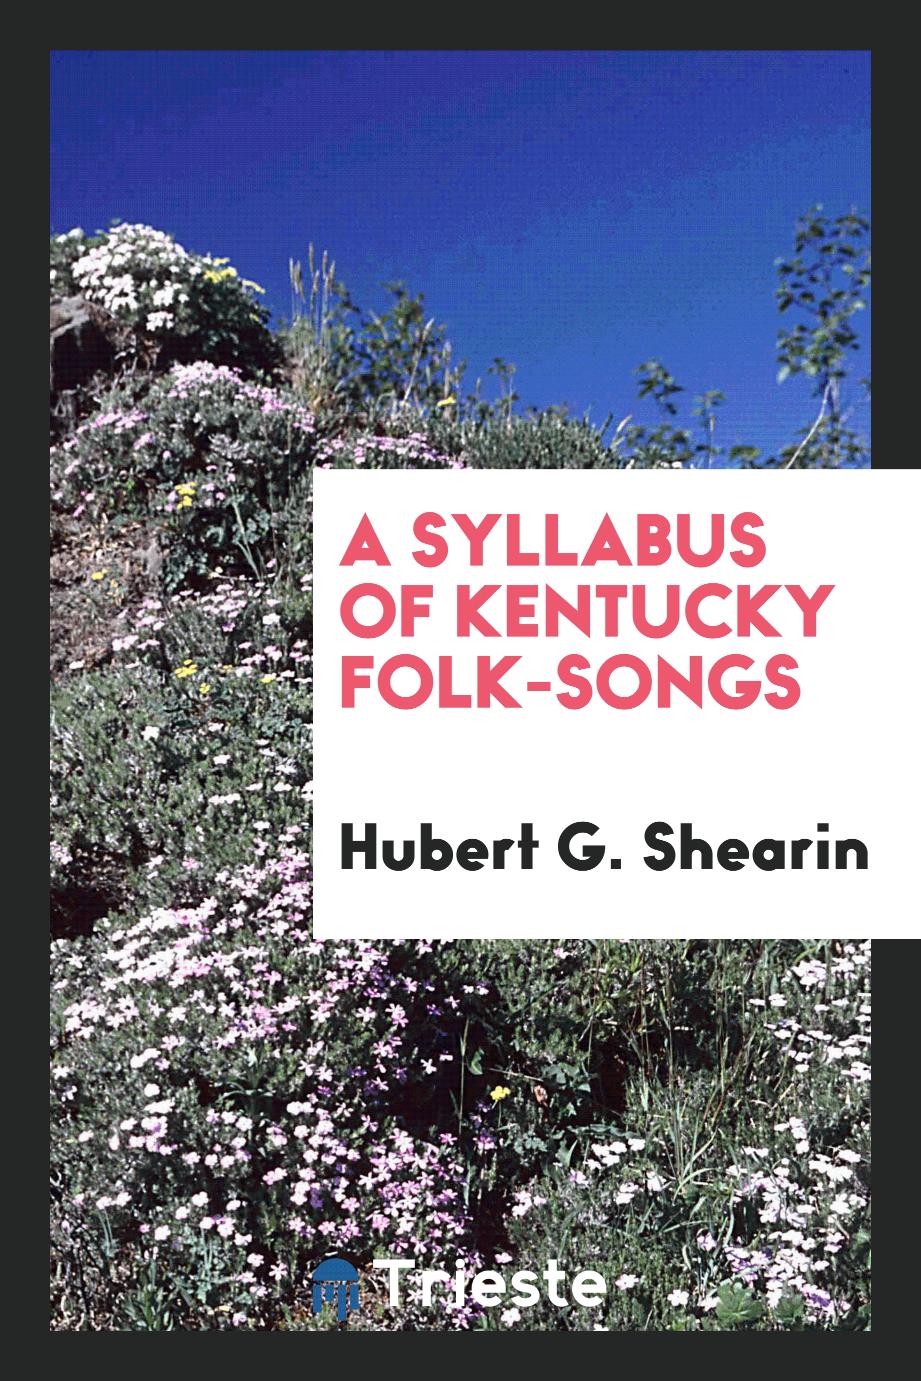 A syllabus of Kentucky folk-songs